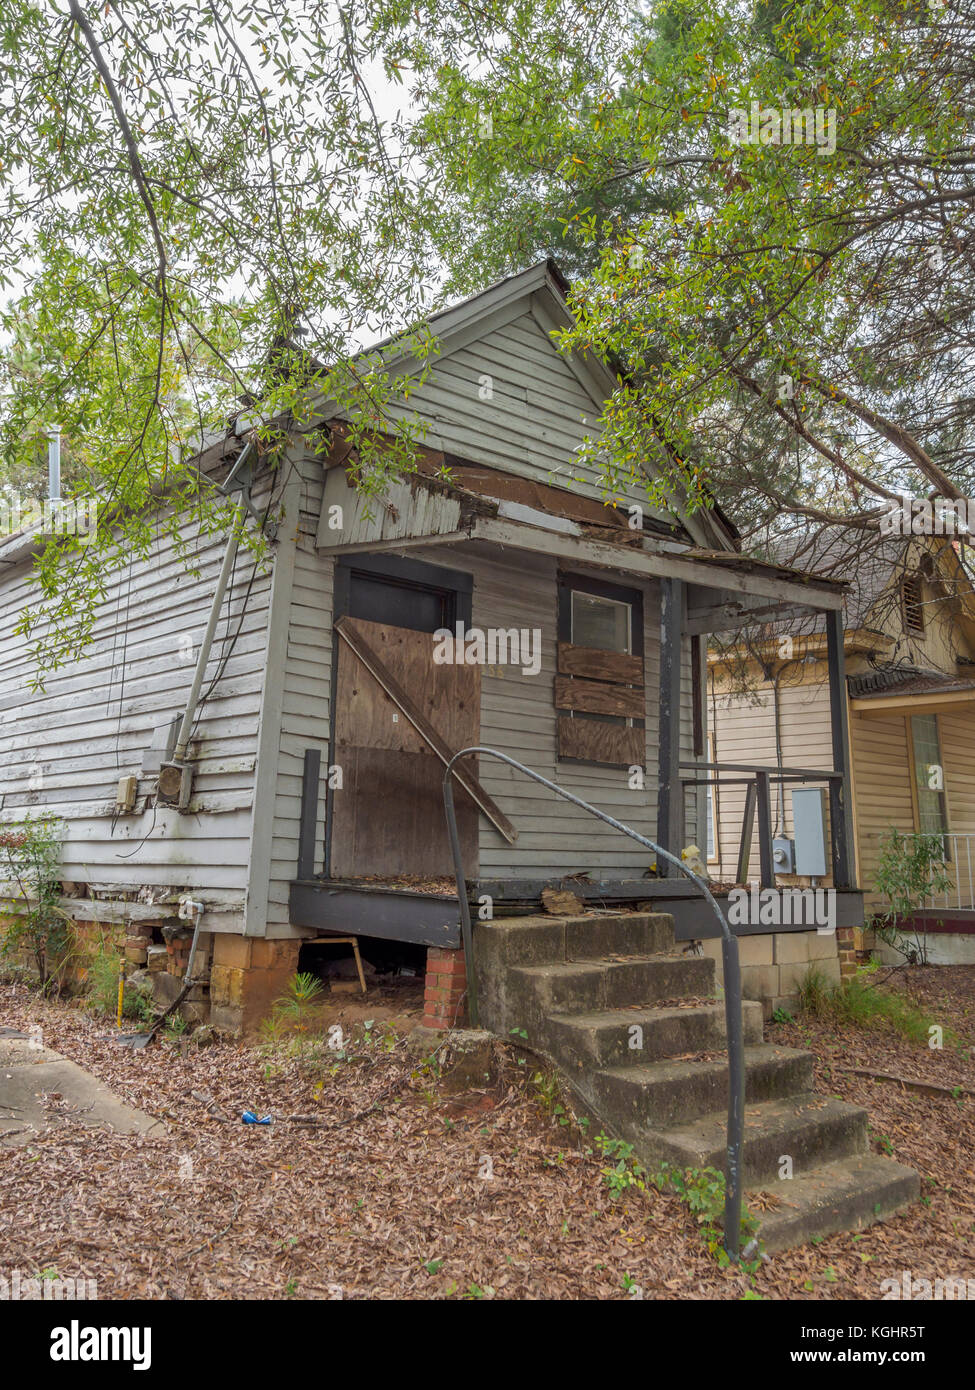 Saliti fino, abbandonato, casa in declino urbano, decadimento batterico, e povertà americana in Montgomery, Alabama USA. Foto Stock